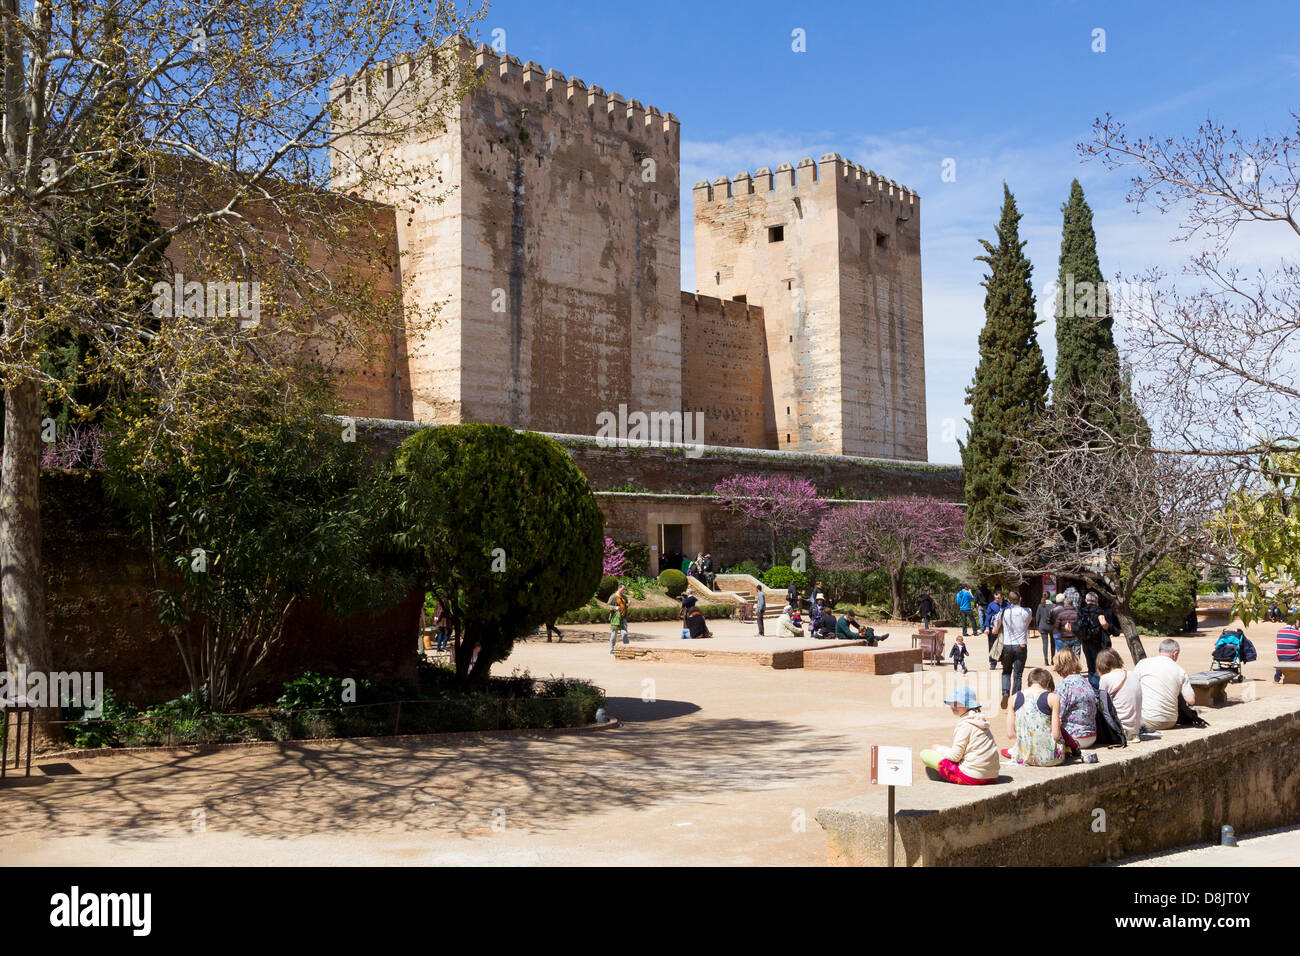 Les remparts de l'Alcazaba, vue de l'intérieur du complexe de l'Alhambra, Granada, Espagne Banque D'Images